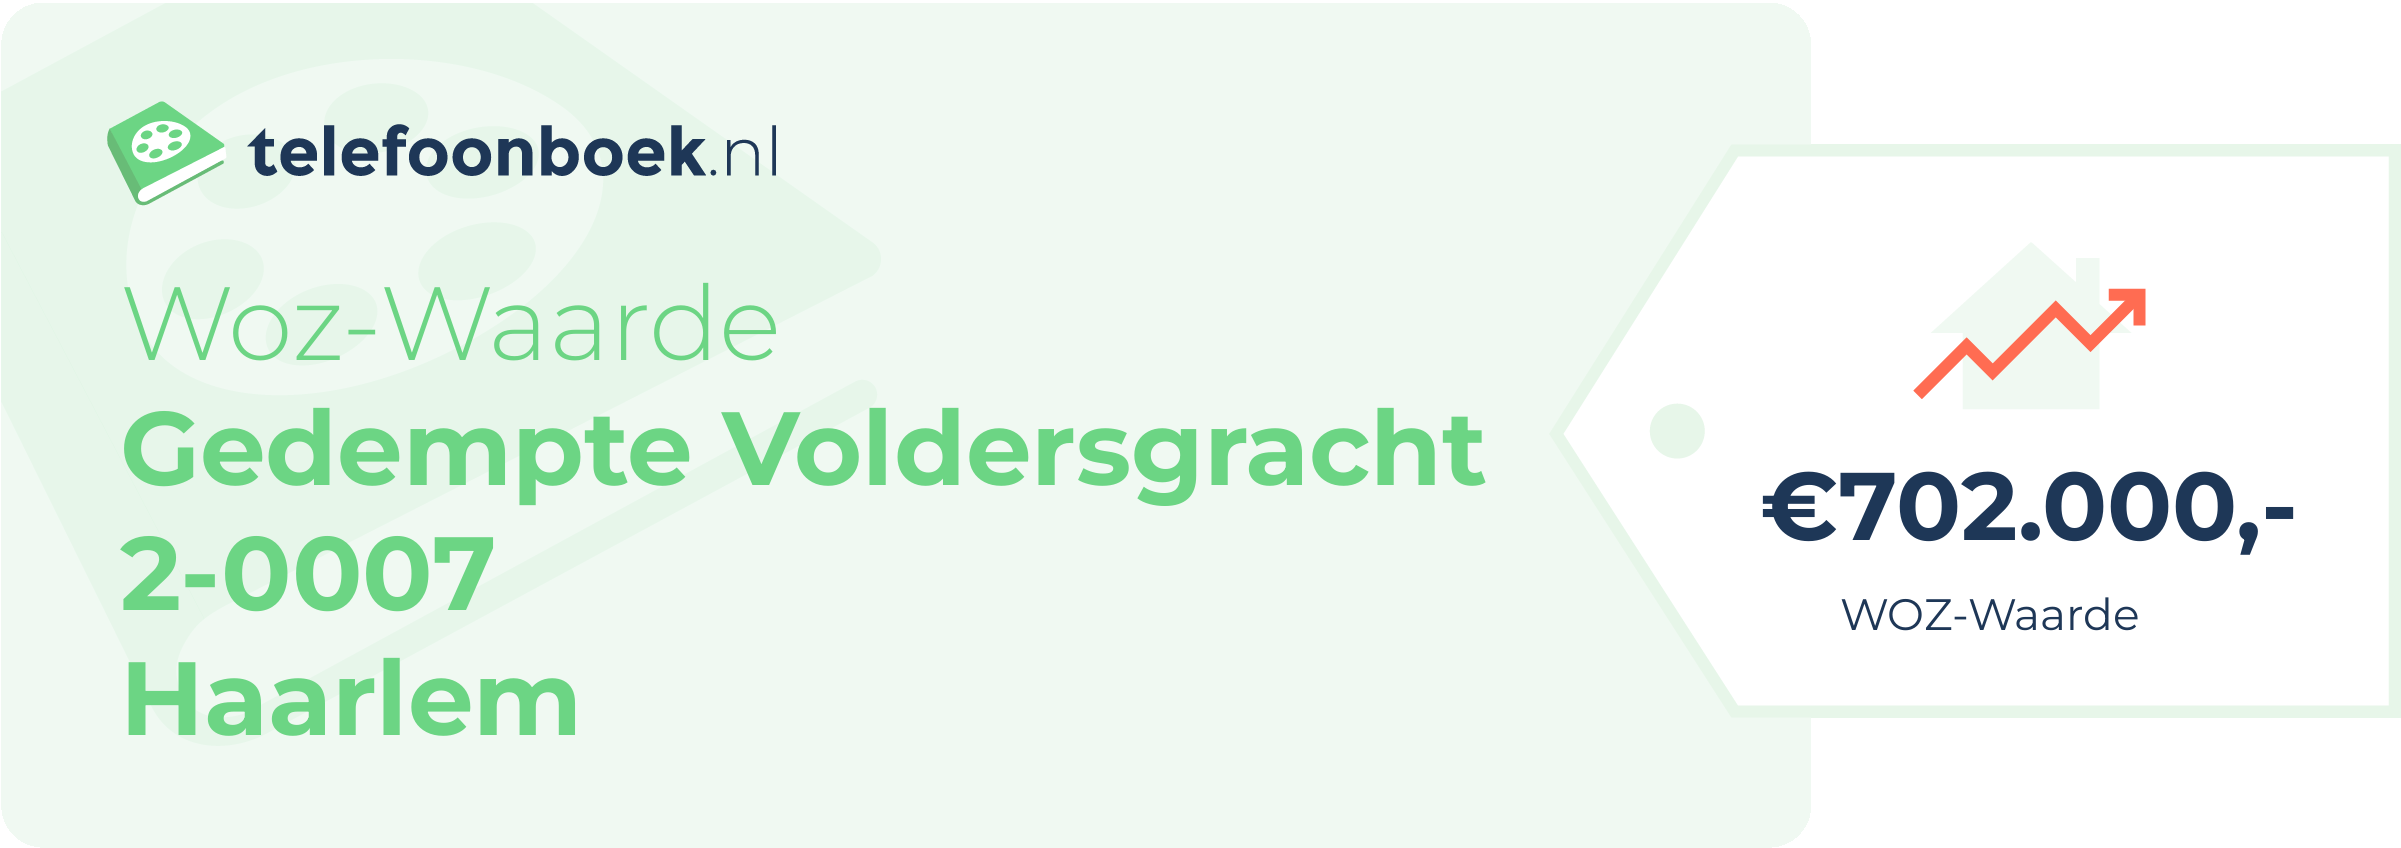 WOZ-waarde Gedempte Voldersgracht 2-0007 Haarlem